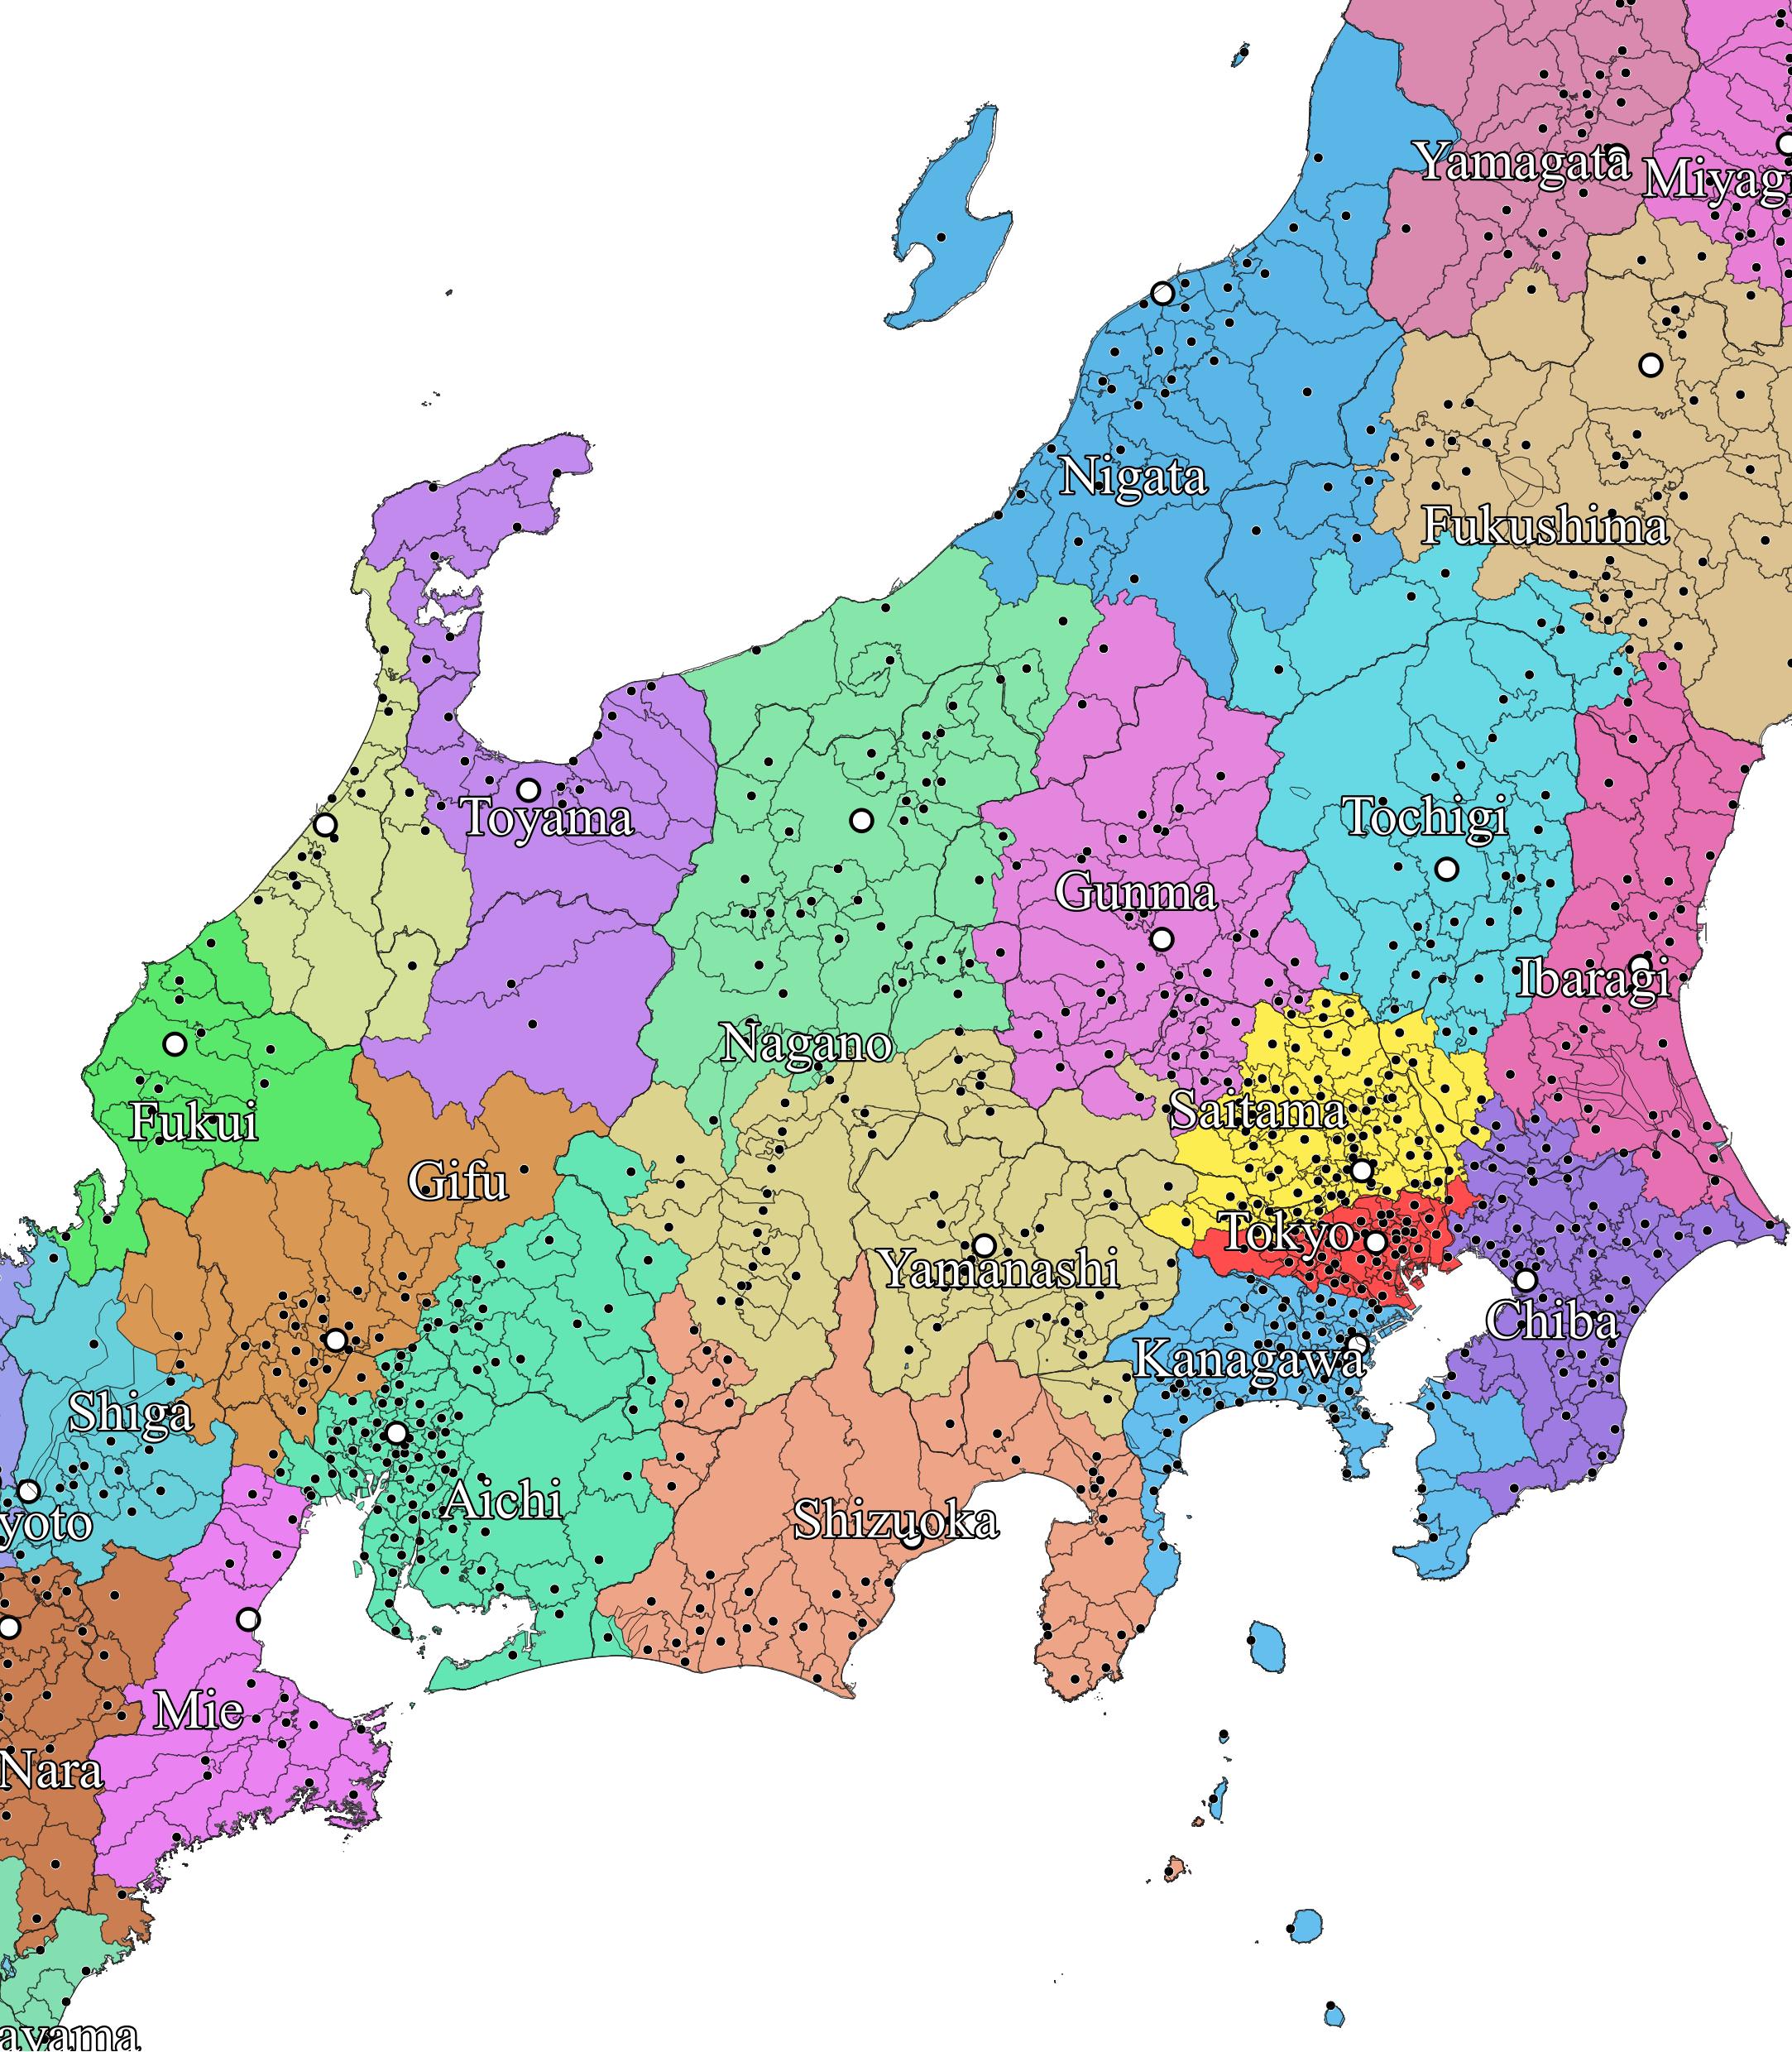 永太郎 ながたろう 色分け日本地図 発売中 各地域を拡大 黒い点は役所 役場 A 北海道 東北 B 関東 中部 C 関西 中四国 D 九州 T Co Rf013jakjx Twitter